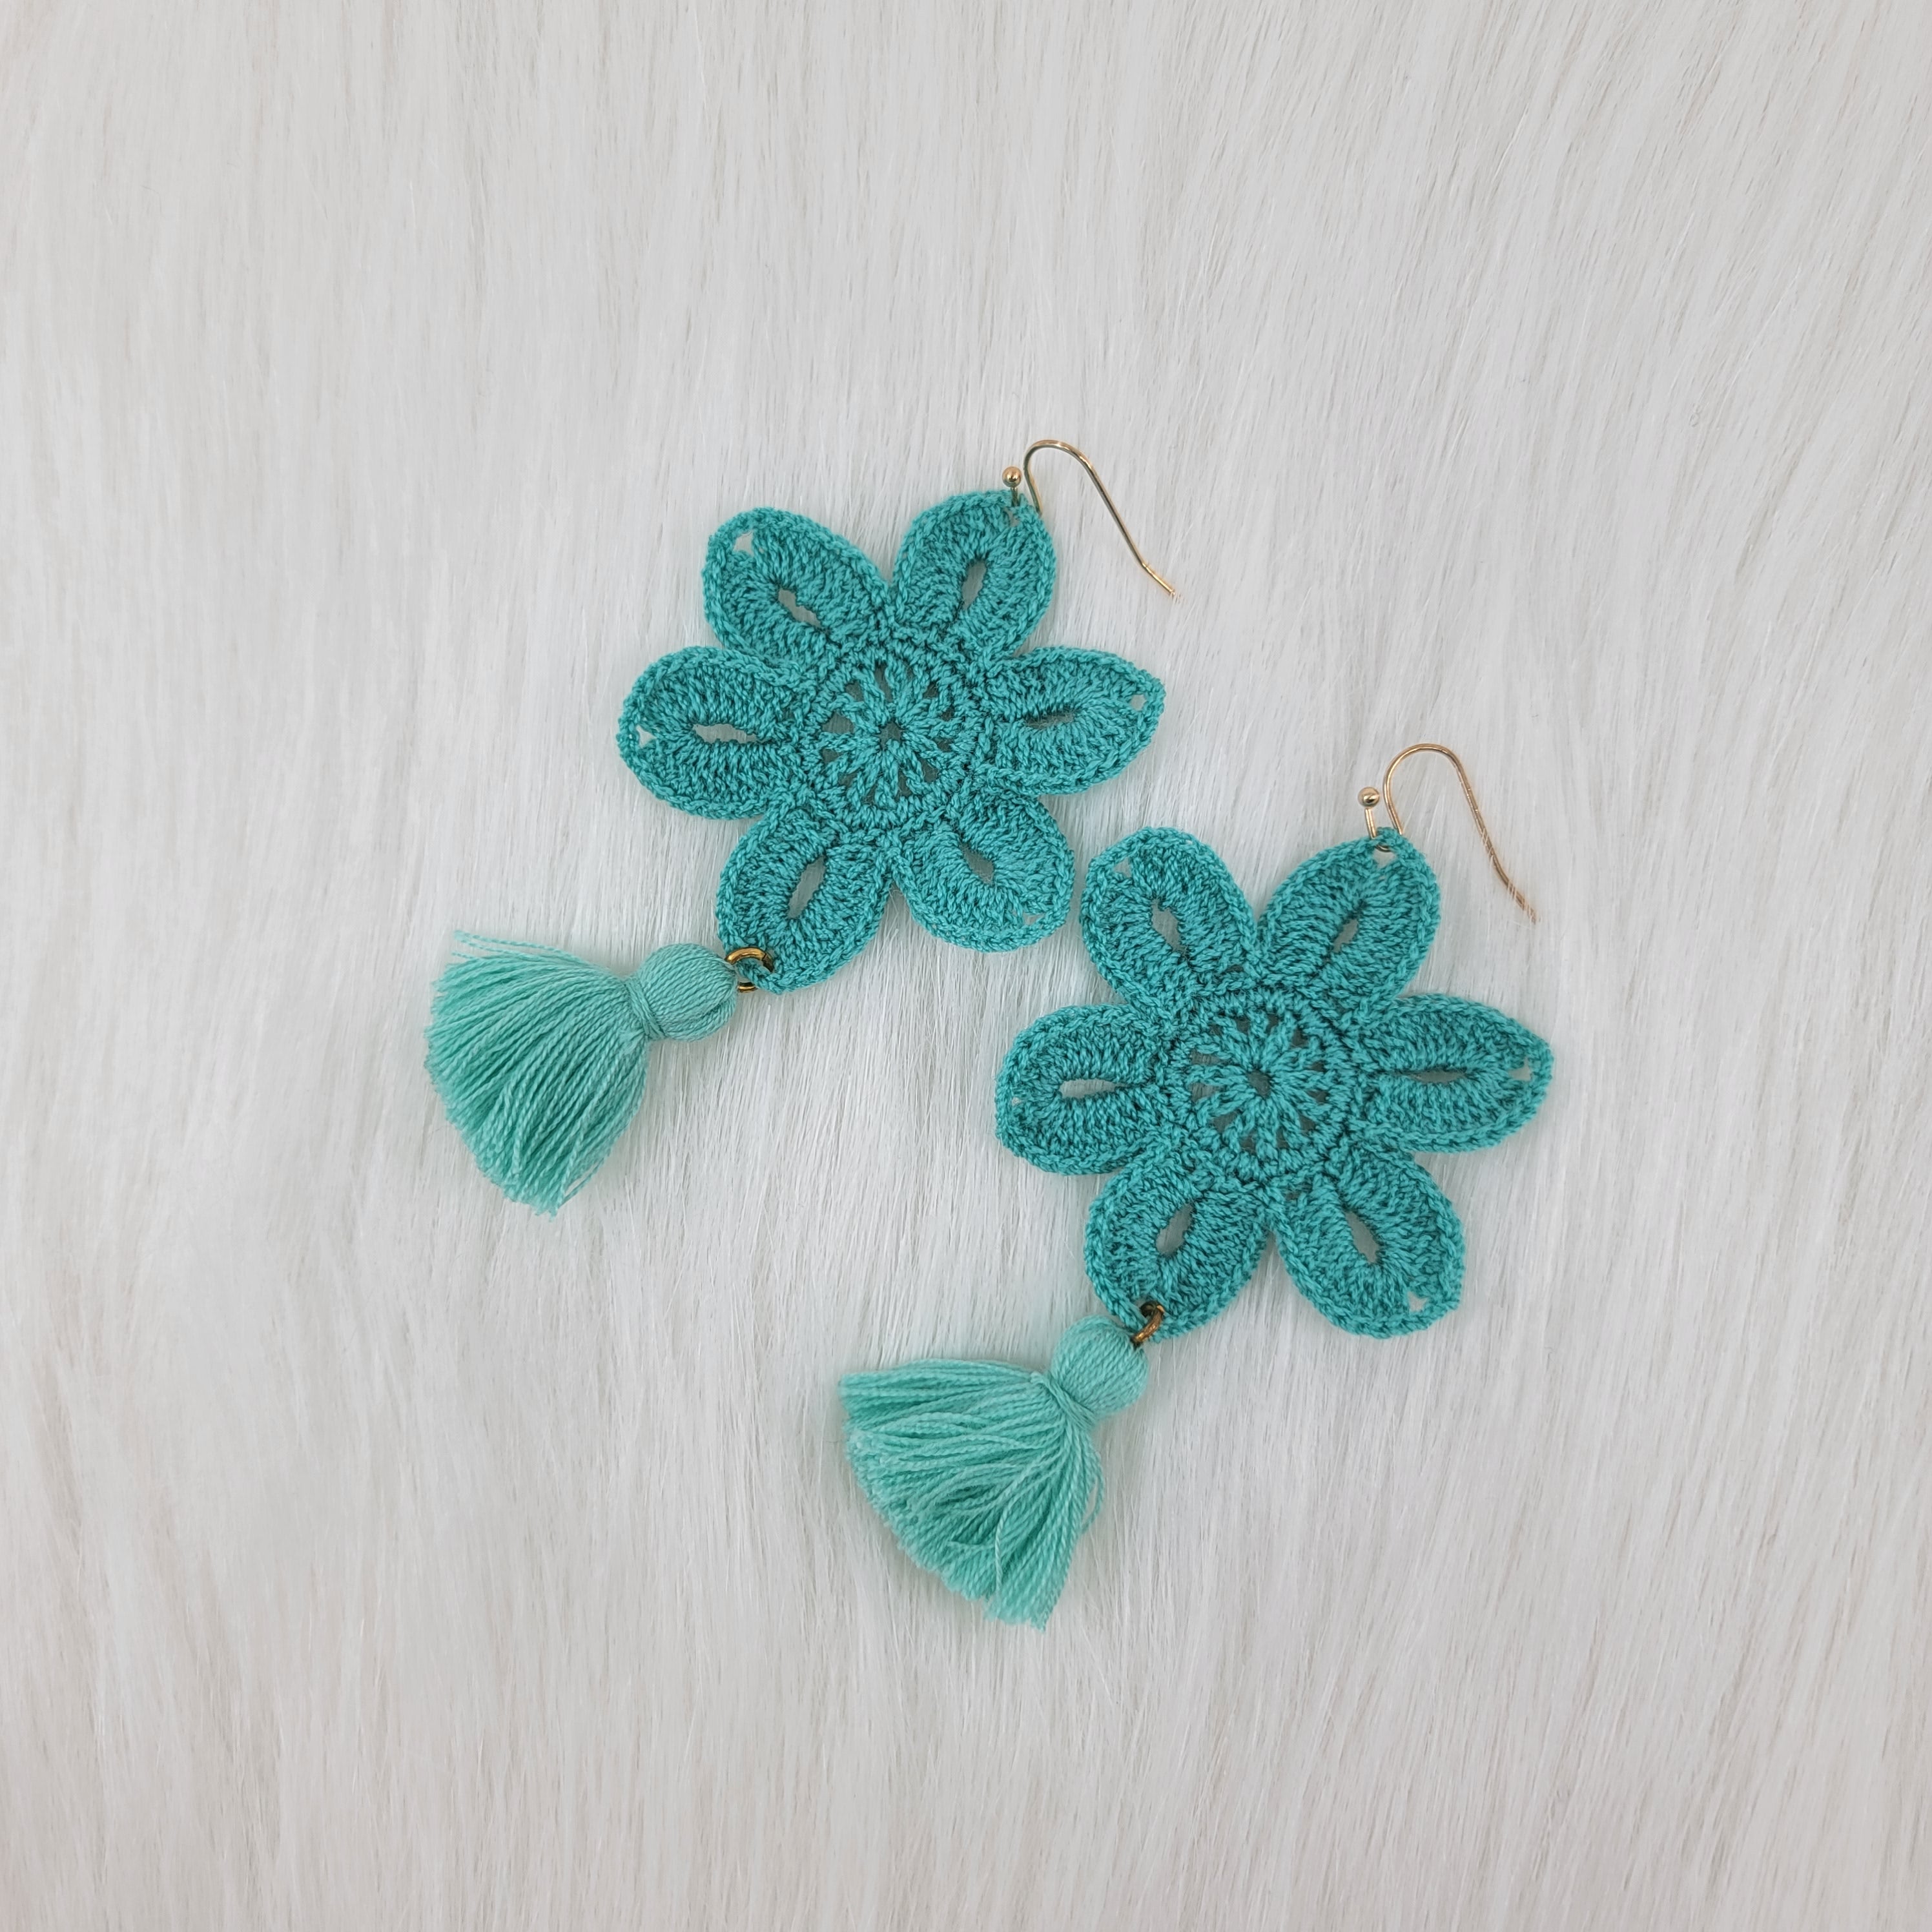 Crochet Flower With Tassels